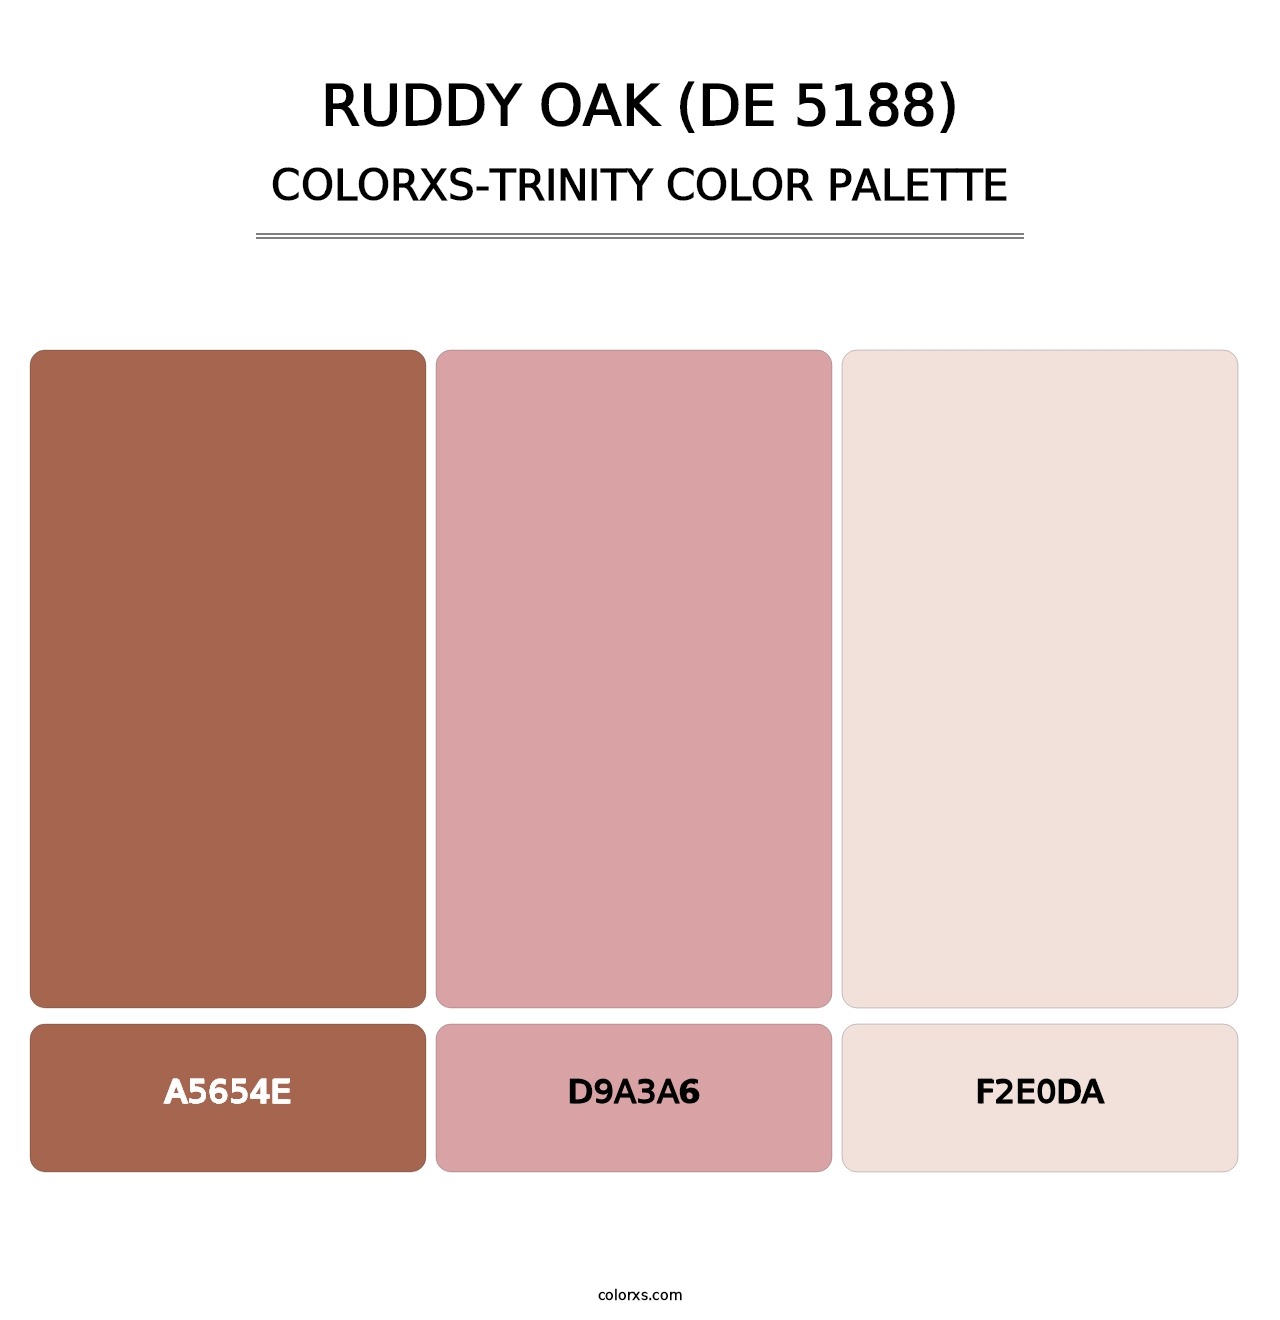 Ruddy Oak (DE 5188) - Colorxs Trinity Palette